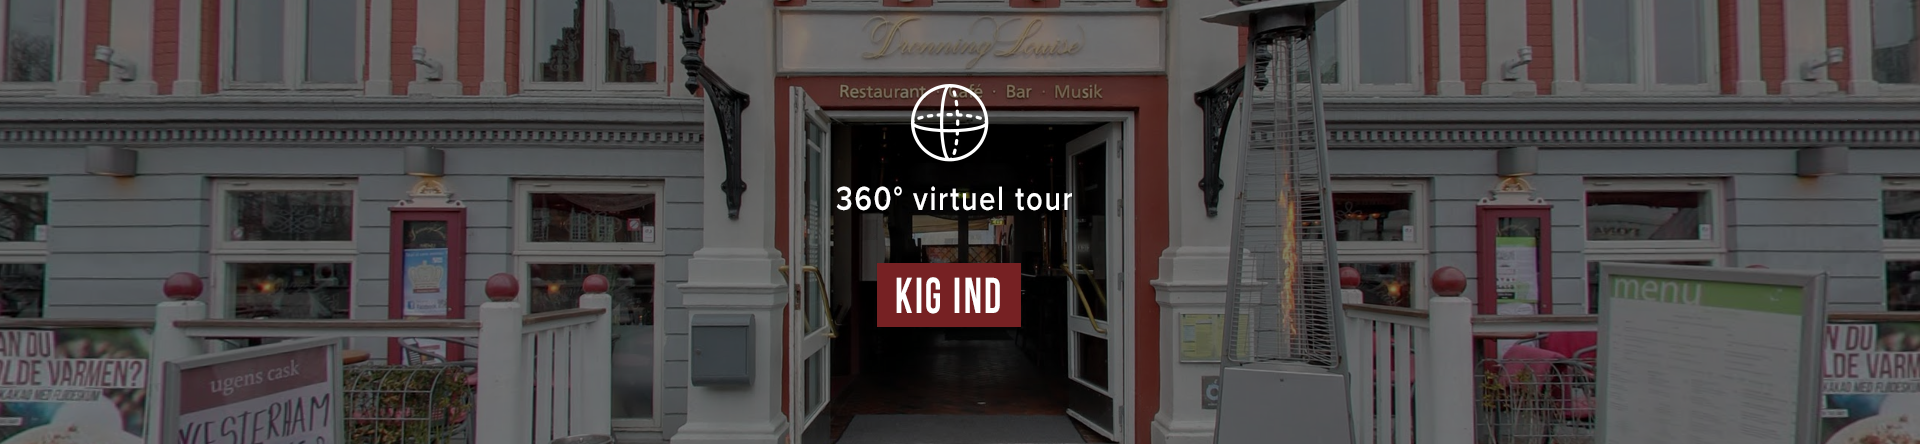 Virtuel tour i Google